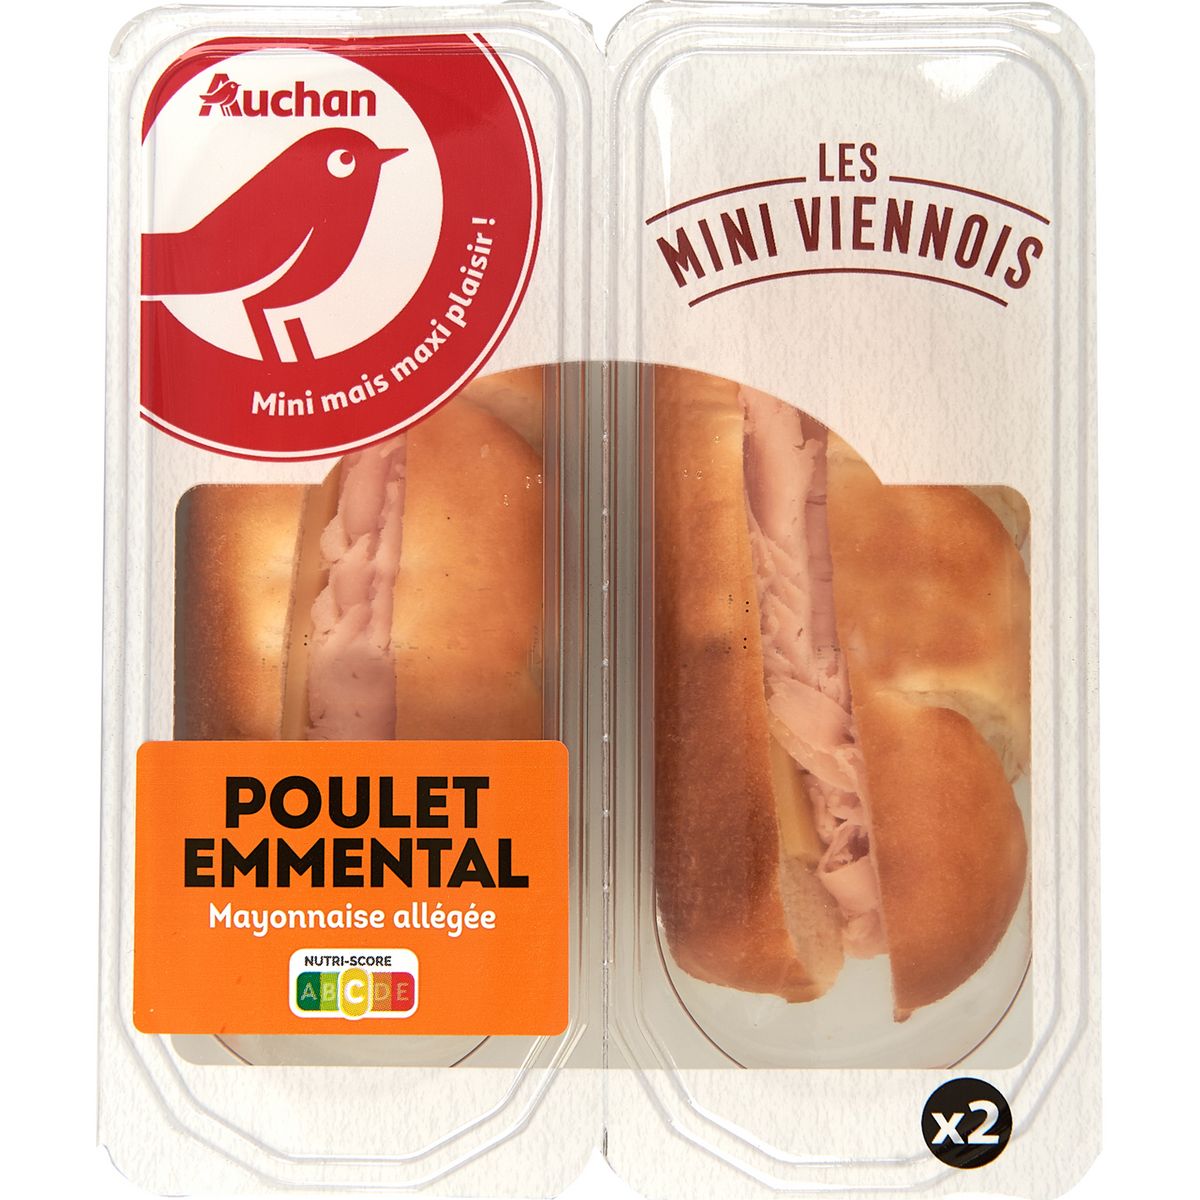 AUCHAN Mini sandwichs Viennois au poulet emmental 2 pièces 130g